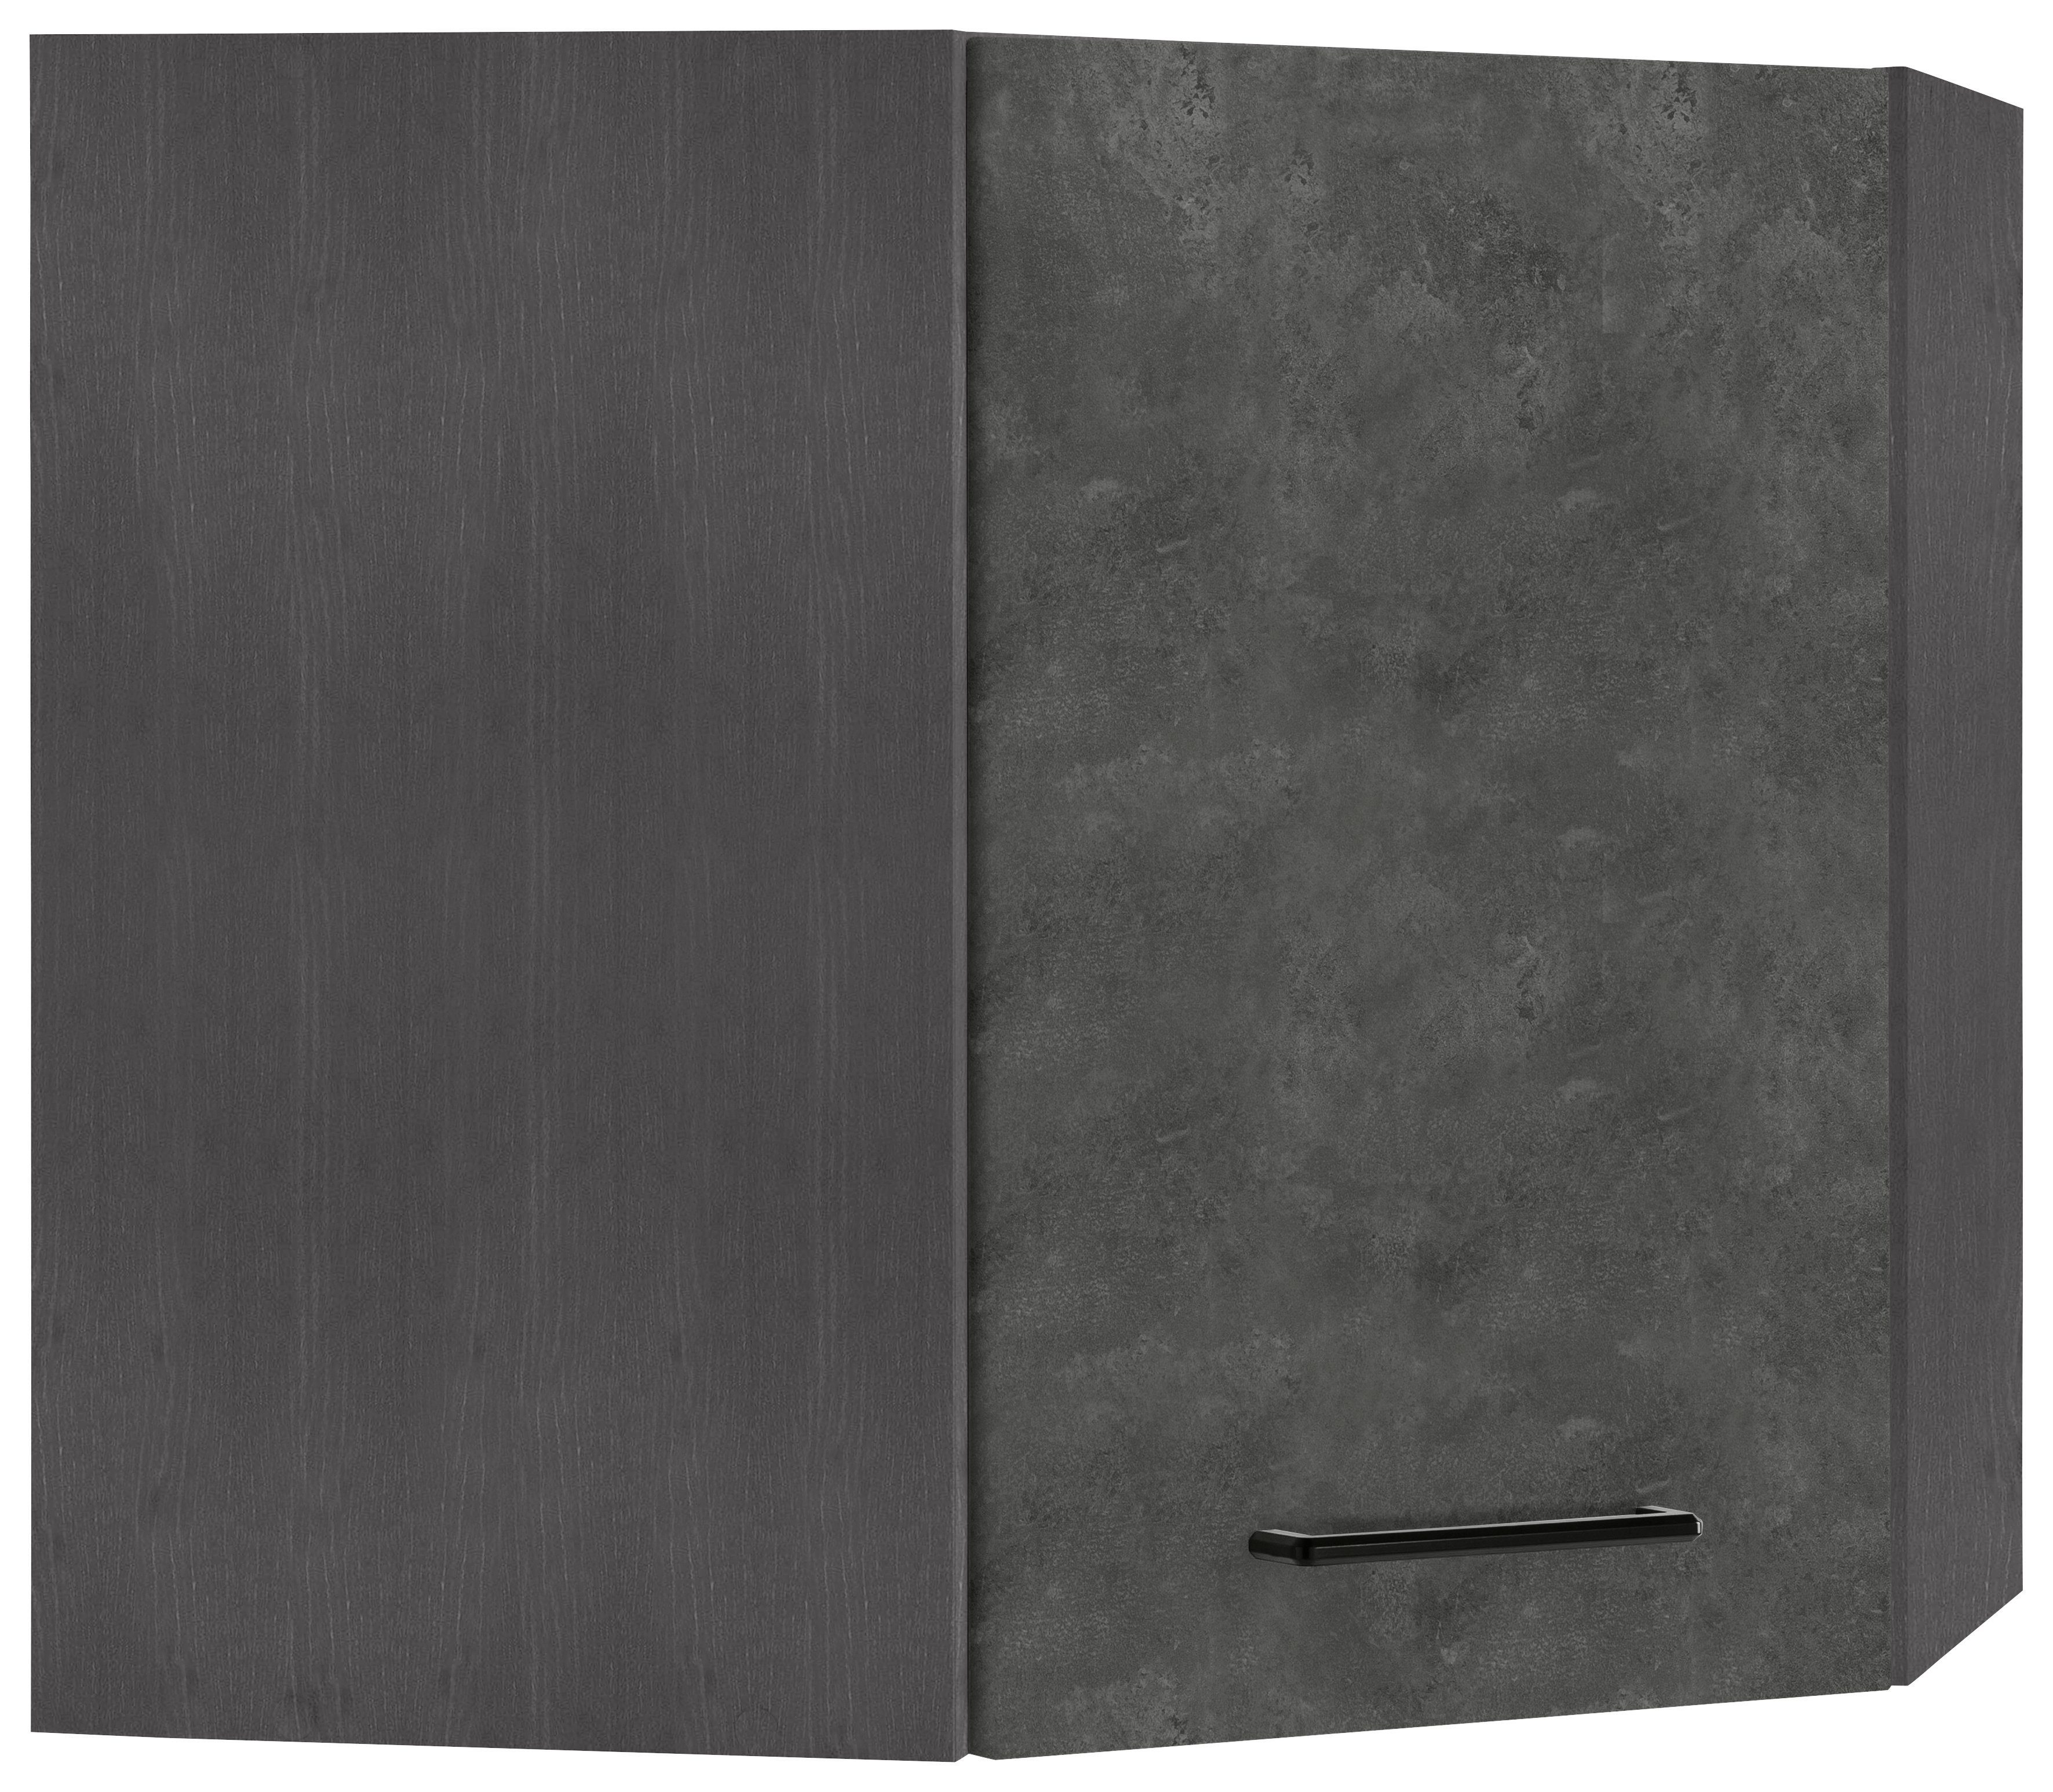 HELD MÖBEL Eckhängeschrank Tulsa 60 cm breit, 1 Tür, schwarzer Metallgriff, hochwertige MDF Front betonfarben dunkel | grafit